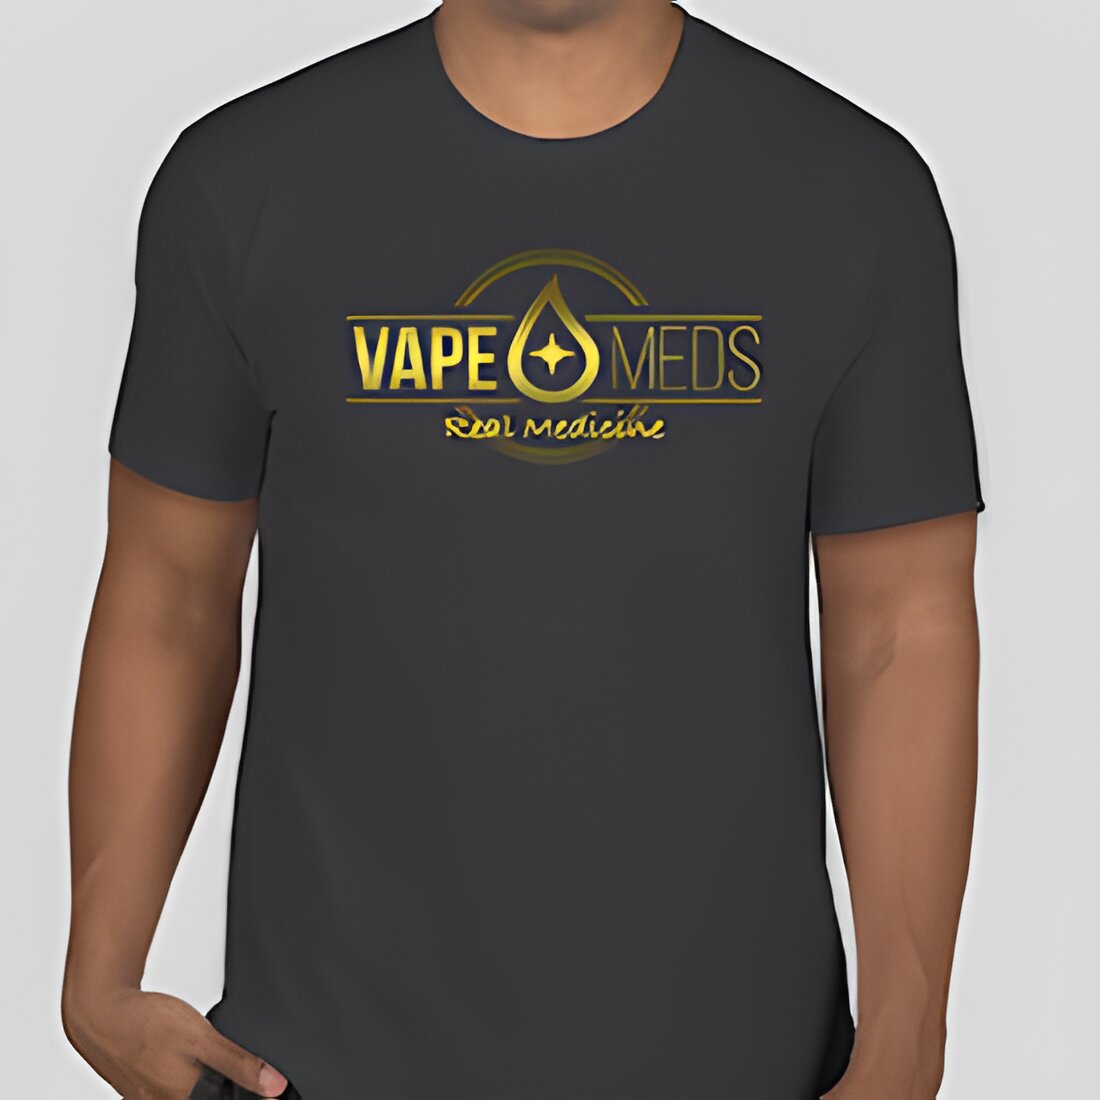 Free Vapemeds T-Shirt